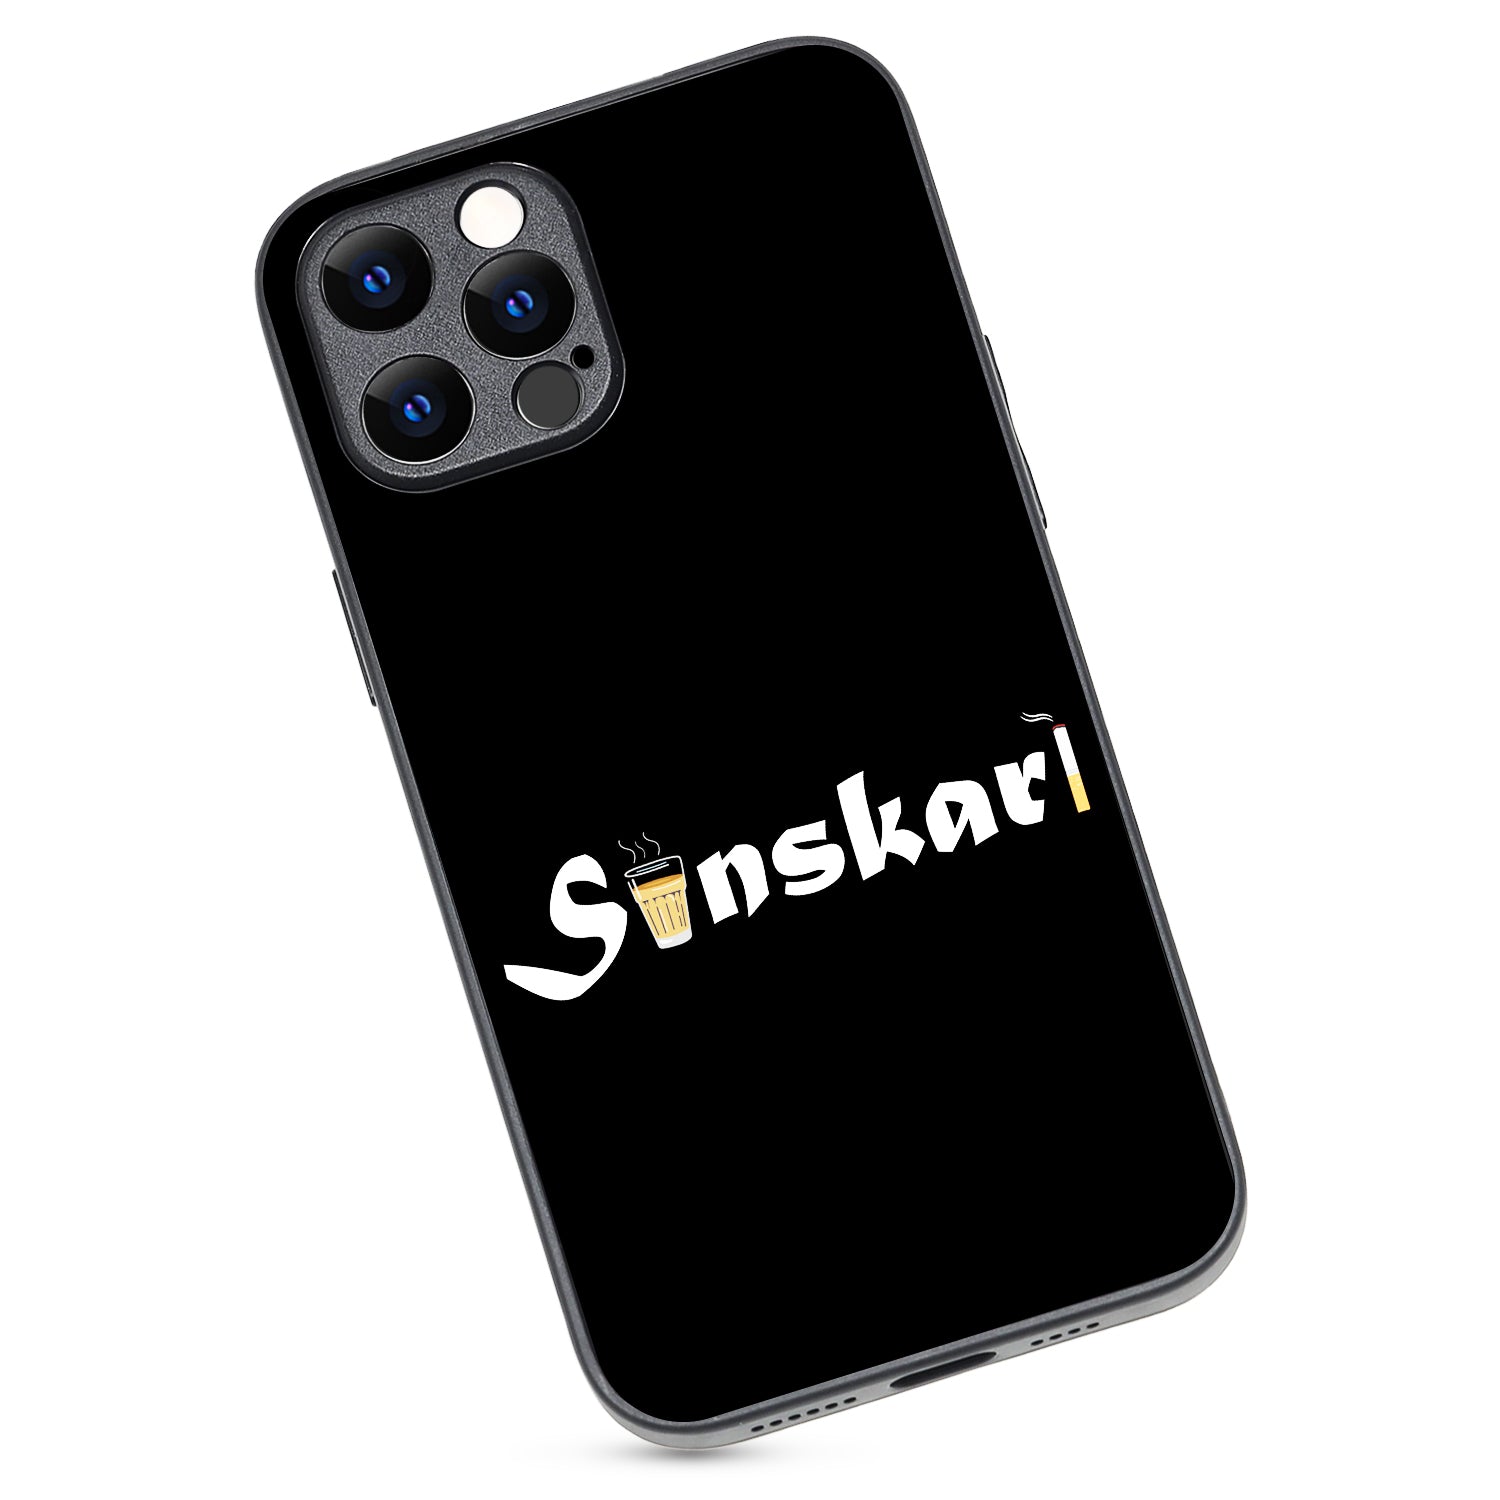 Sanskari Uniword iPhone 12 Pro Max Case